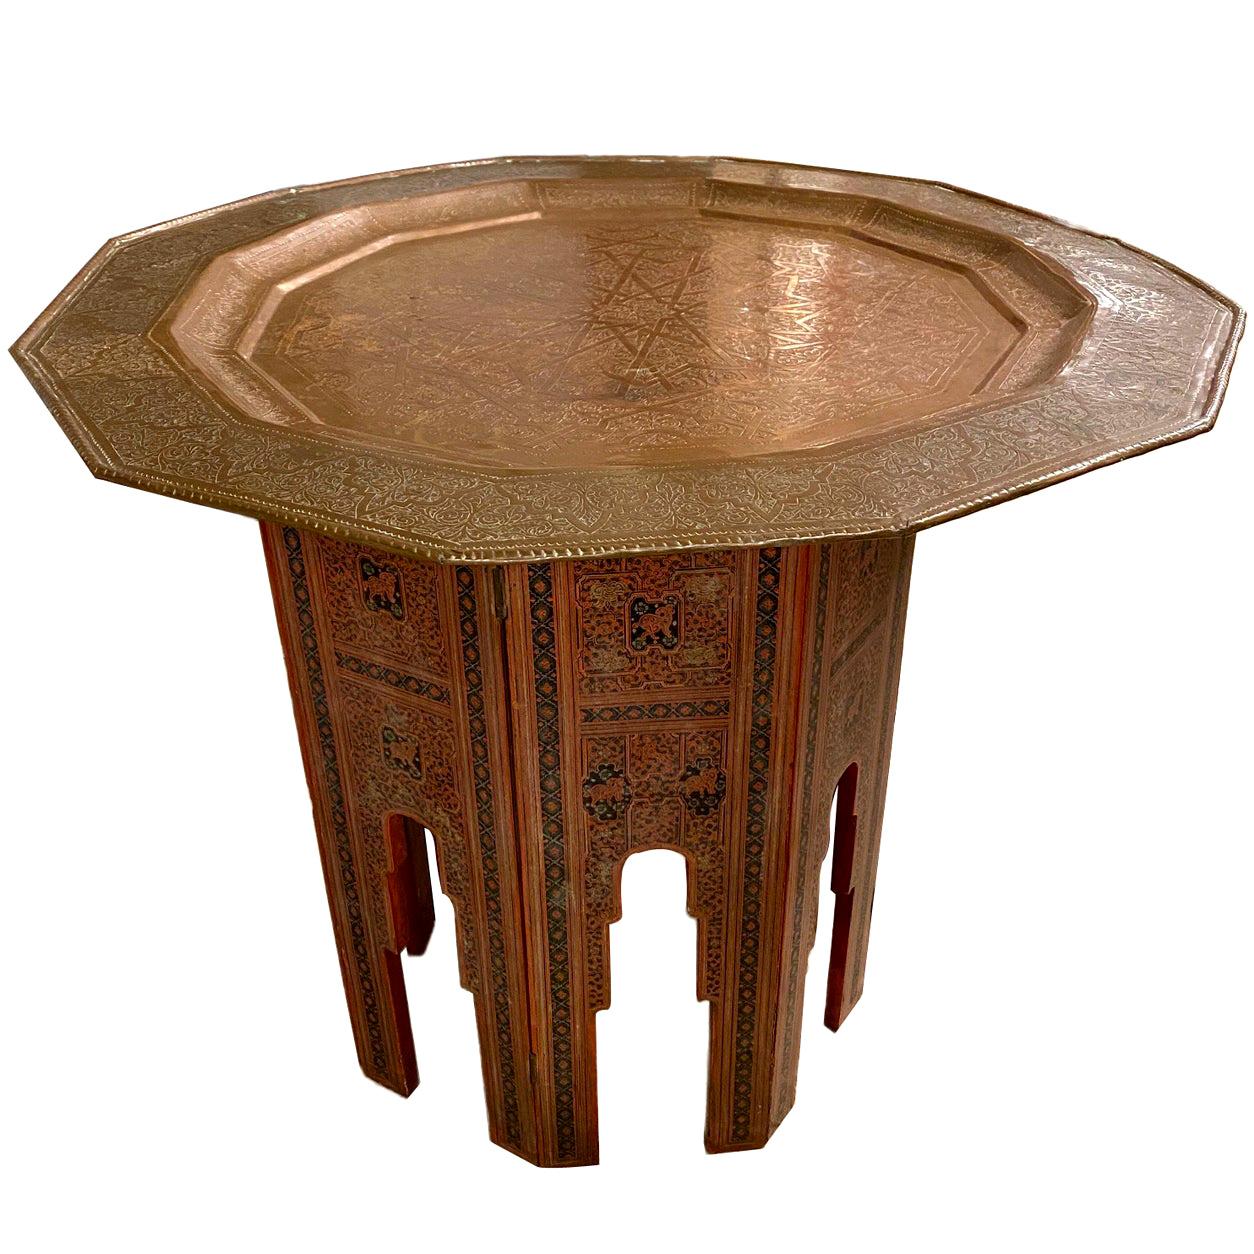 Ein marokkanischer Tisch mit bemaltem Holzsockel und arabeskengeätztem Metalltablett aus den 1940er Jahren.

Abmessungen:
Höhe: 28